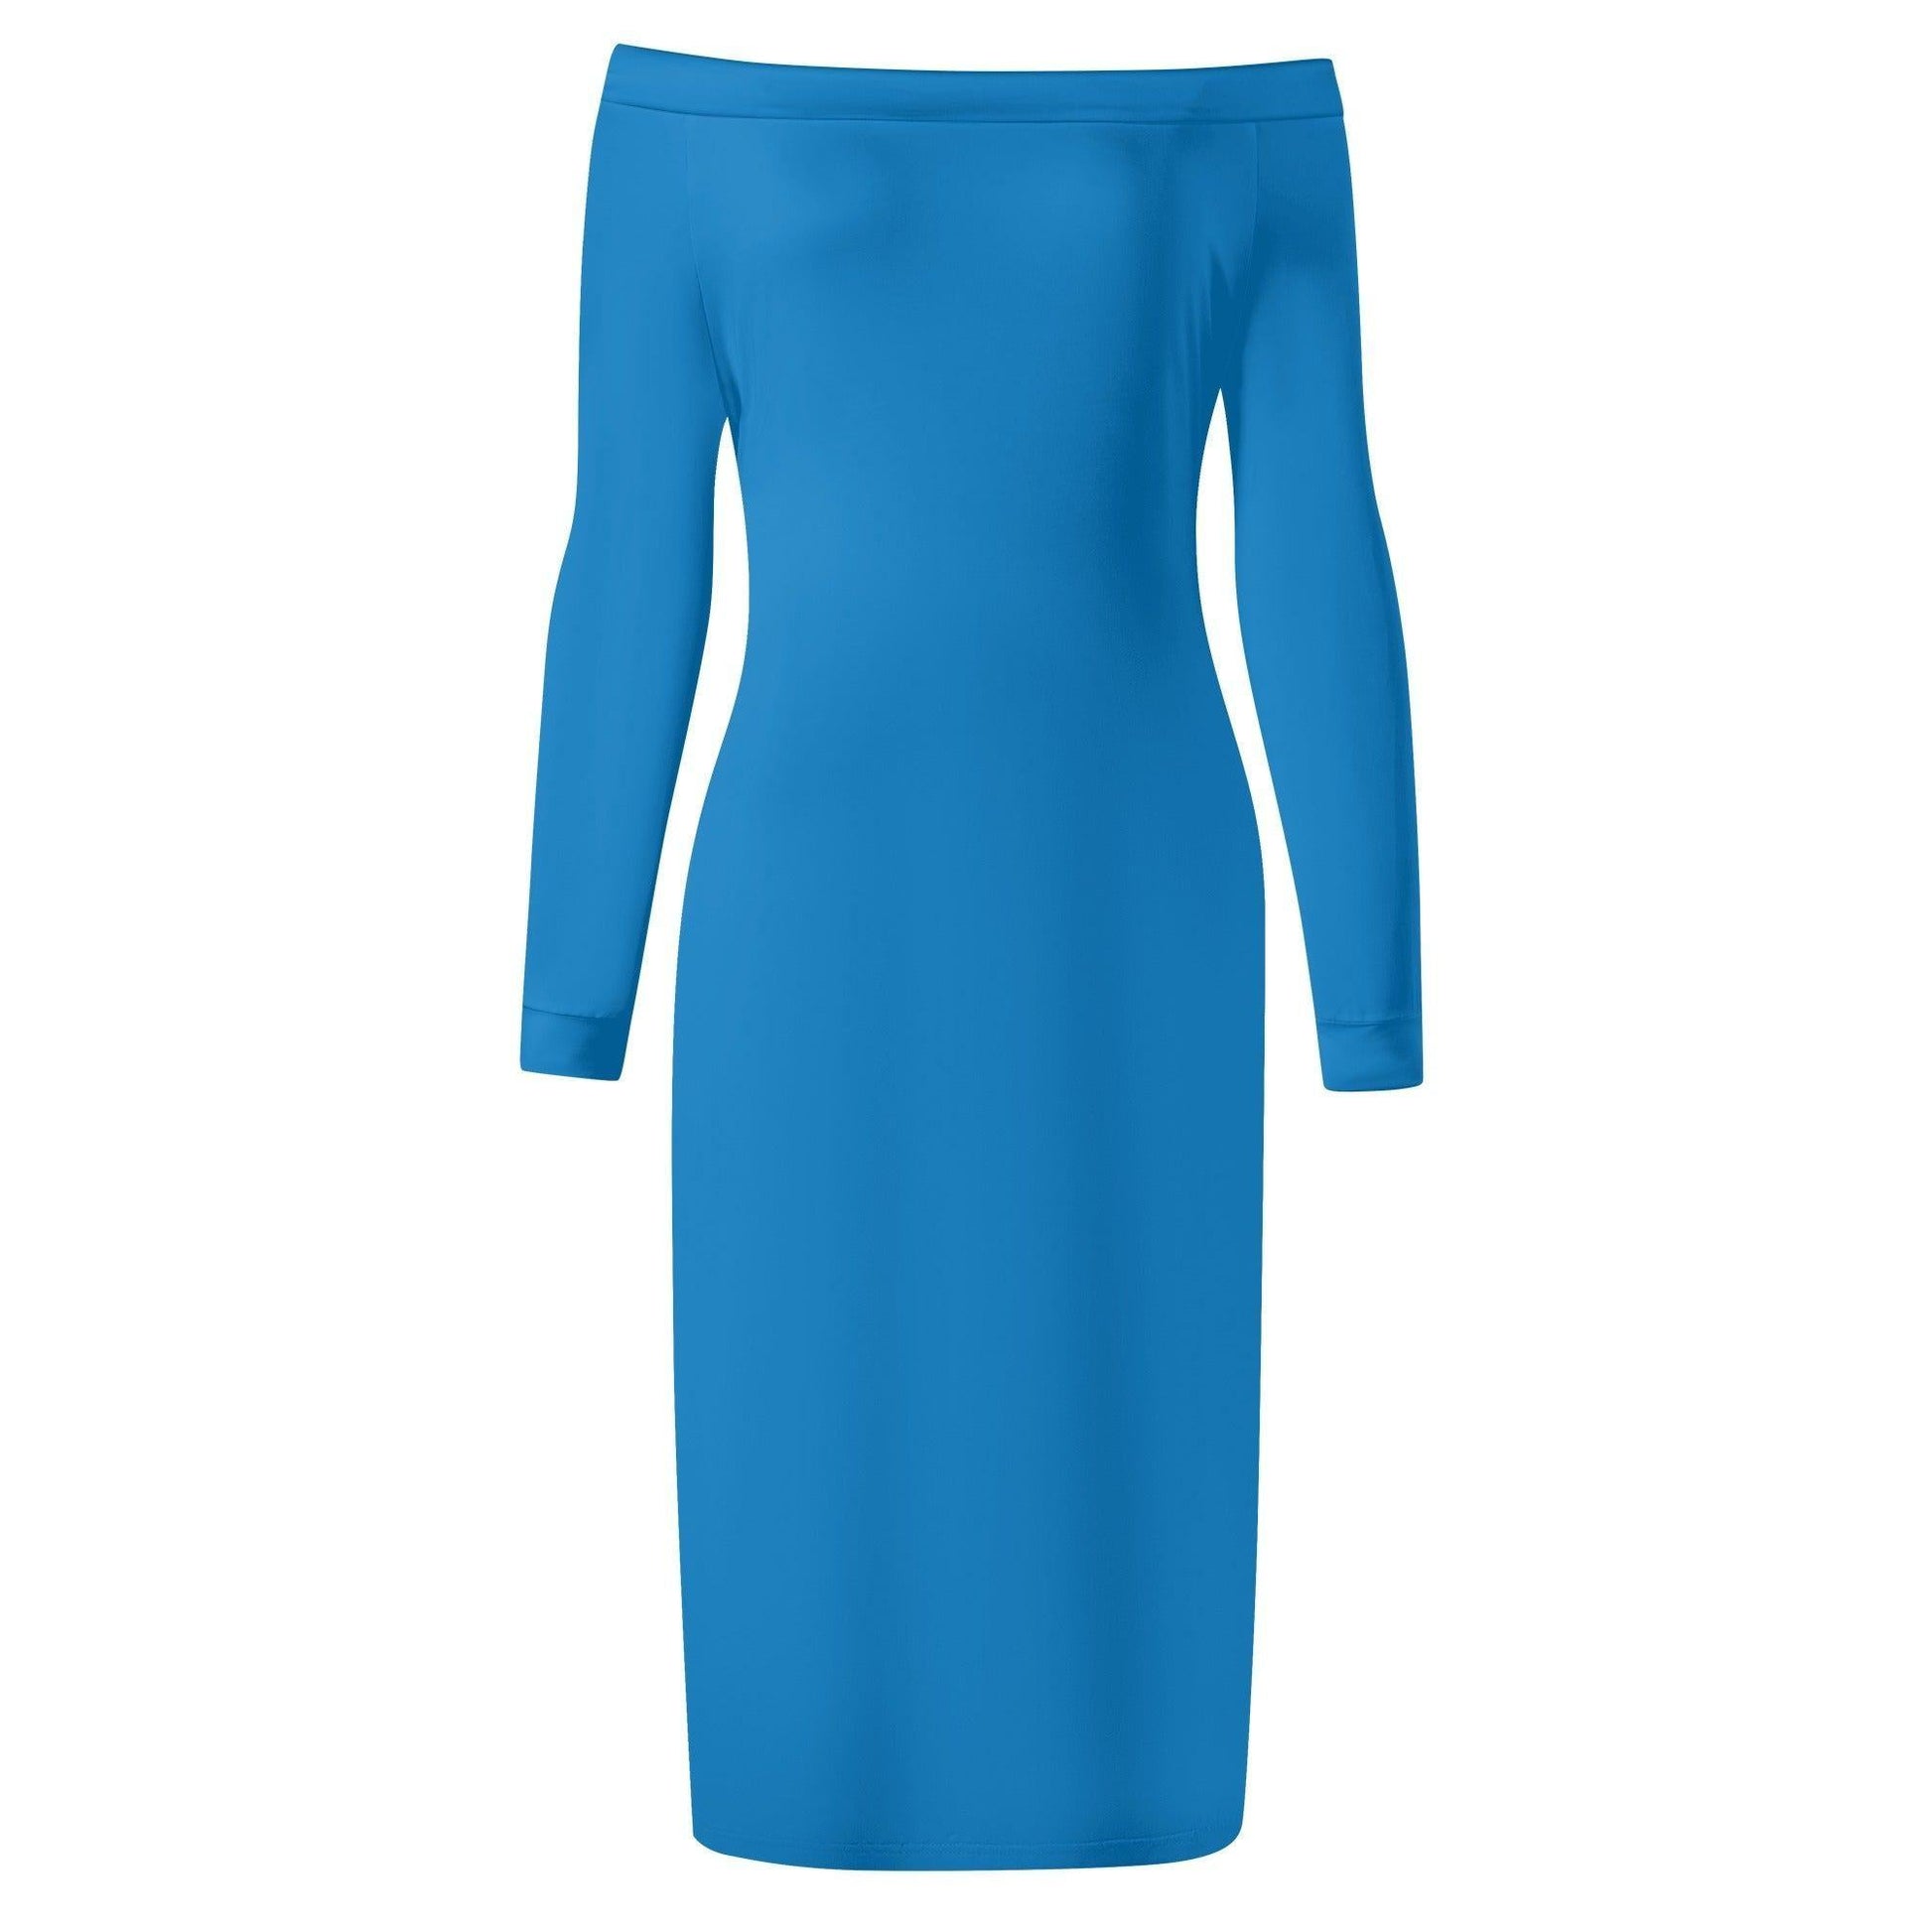 Navy Blue Long Sleeve Off-Shoulder-Kleid -- Navy Blue Long Sleeve Off-Shoulder-Kleid - undefined Off-Shoulder-Kleid | JLR Design